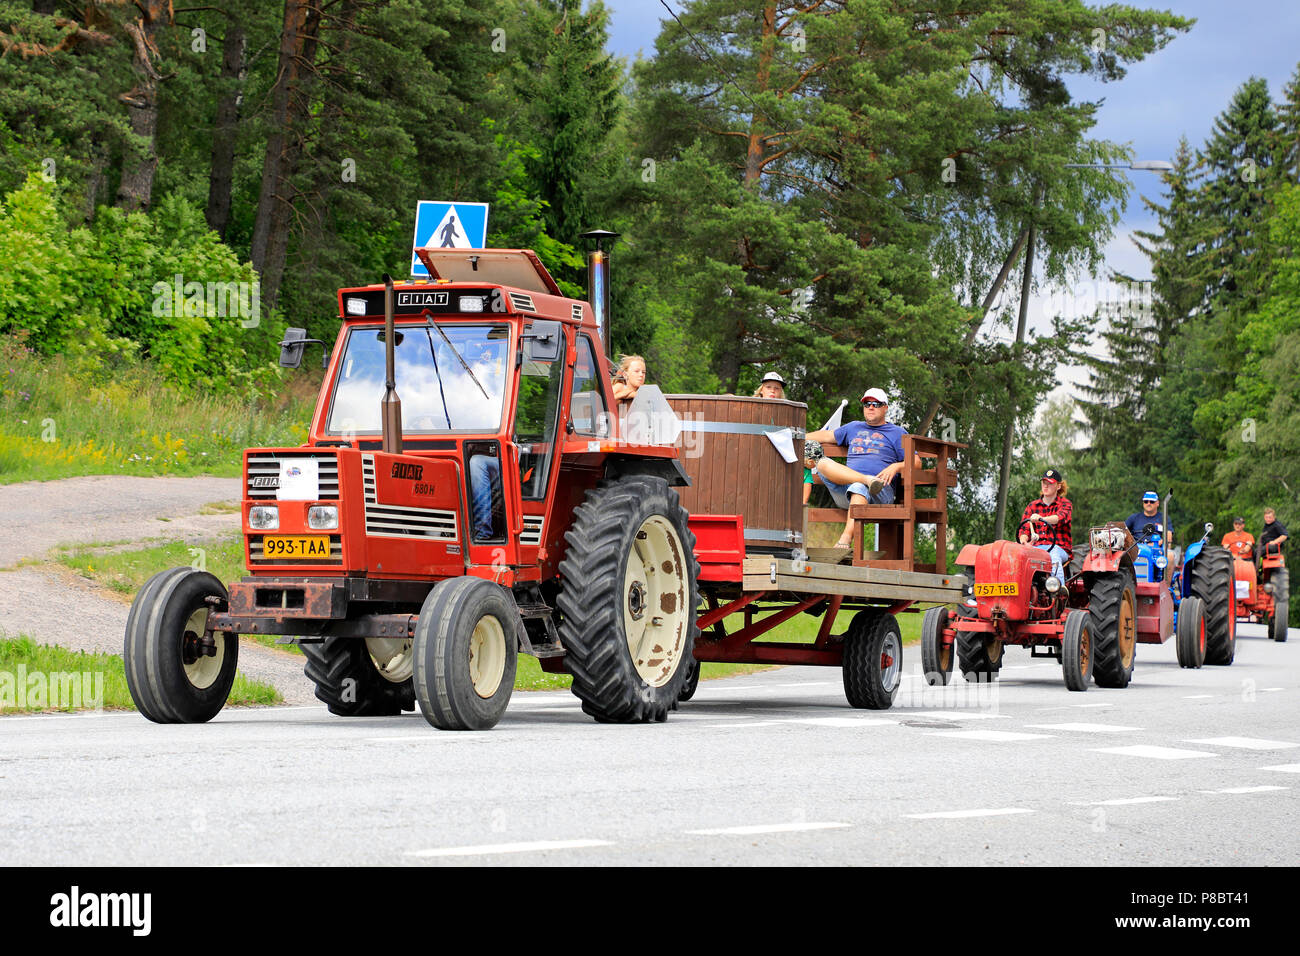 Tracteur Fiat 680 H et d'un bain à remous avec des enfants sur la remorque d'abord en procession le Kama & Mac Gregor, Traktorkavalkad Cavalcade du tracteur. Kama & Mac Gregor, Finlande - le 7 juillet 2018. Banque D'Images